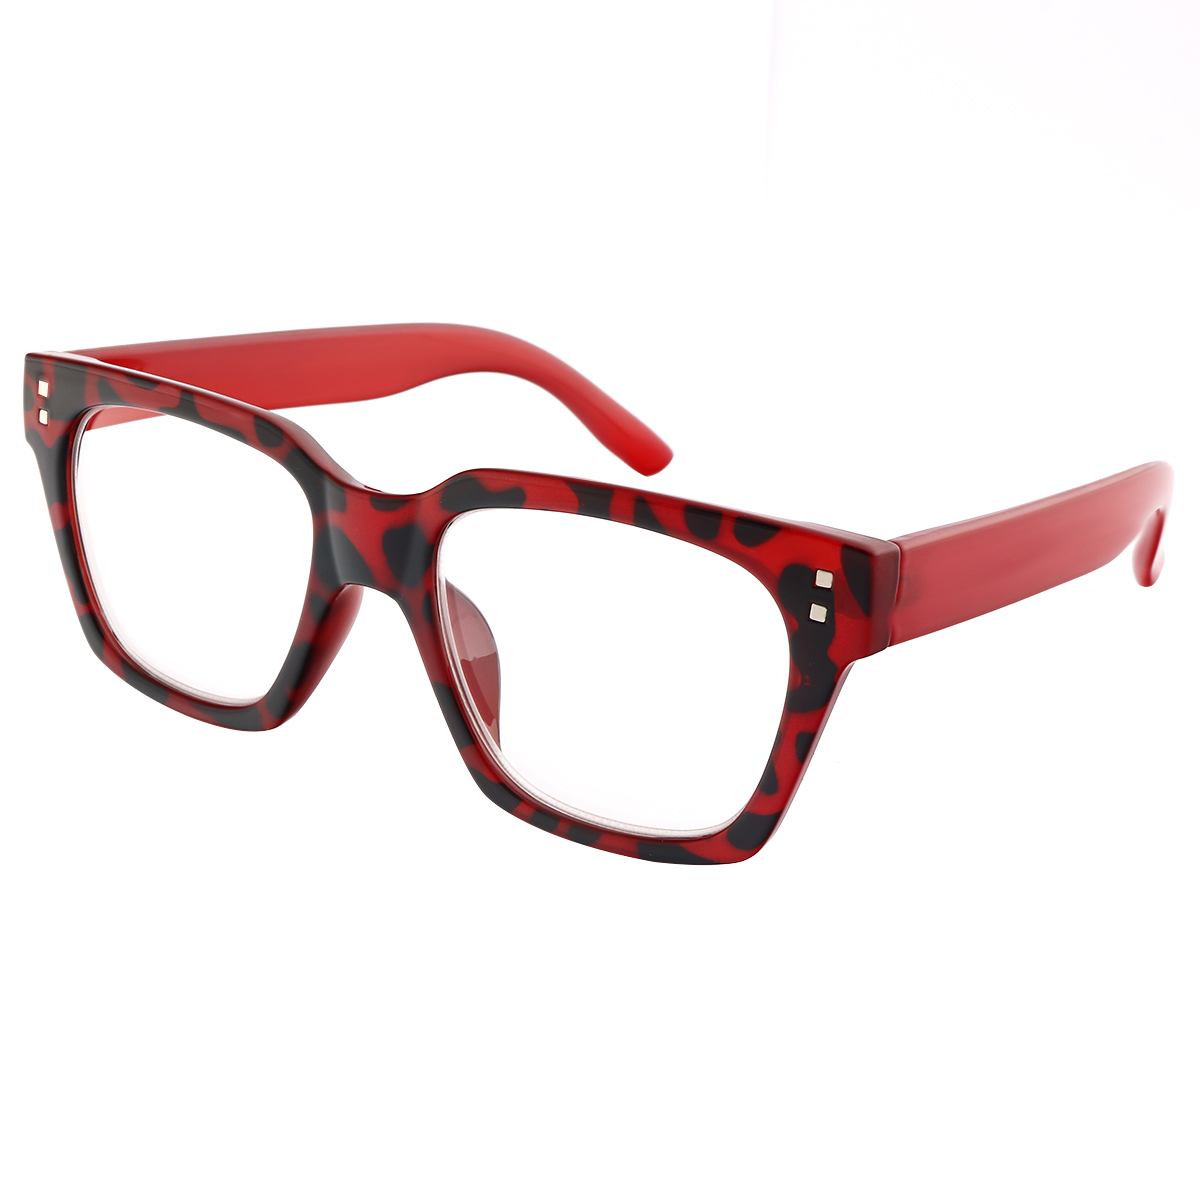 Bridget - Square Red Reading Glasses for Men & Women